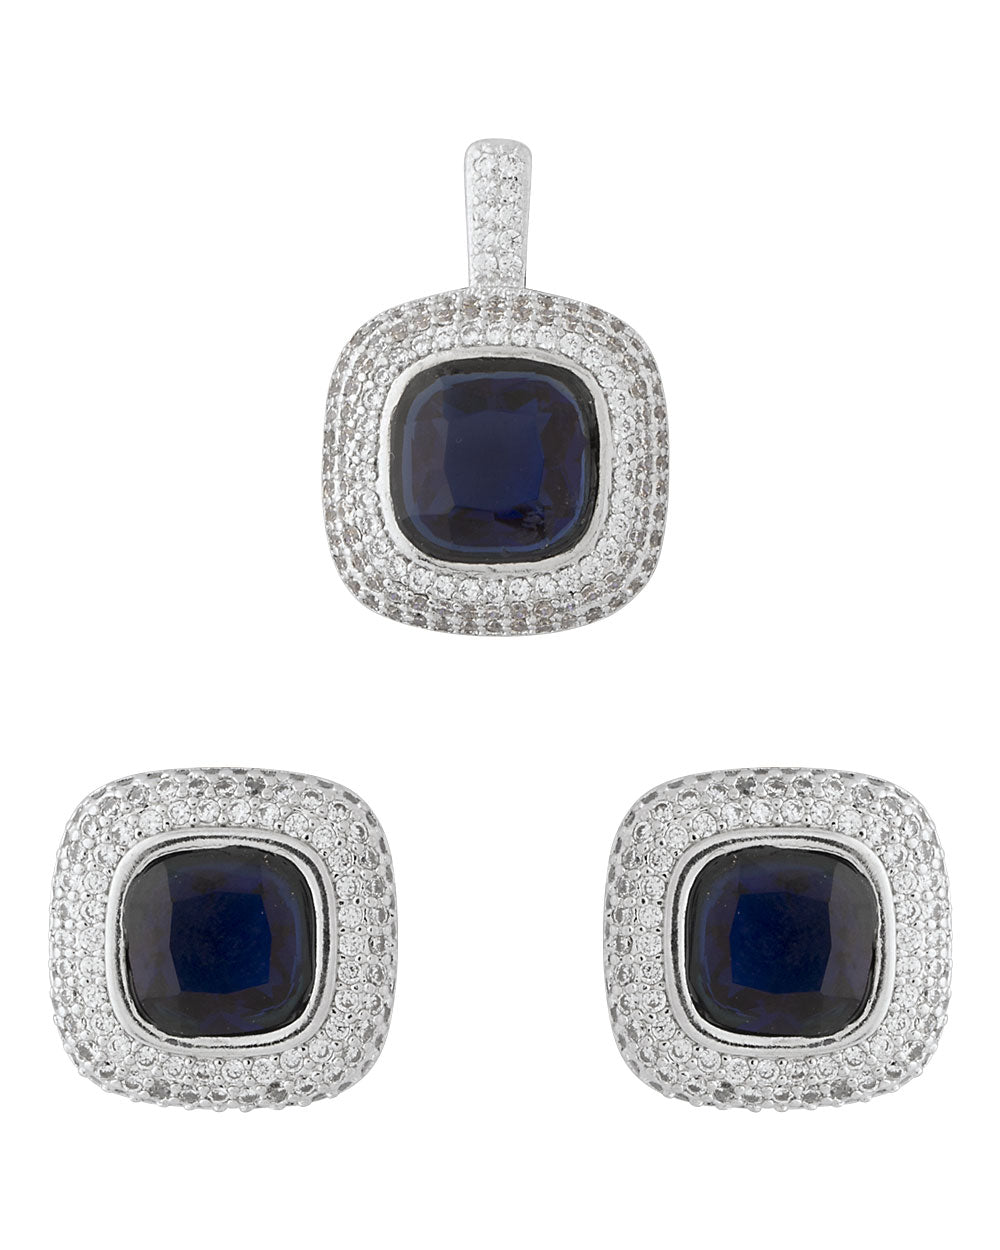 Royal Blue Pendant and Earrings Combo Set